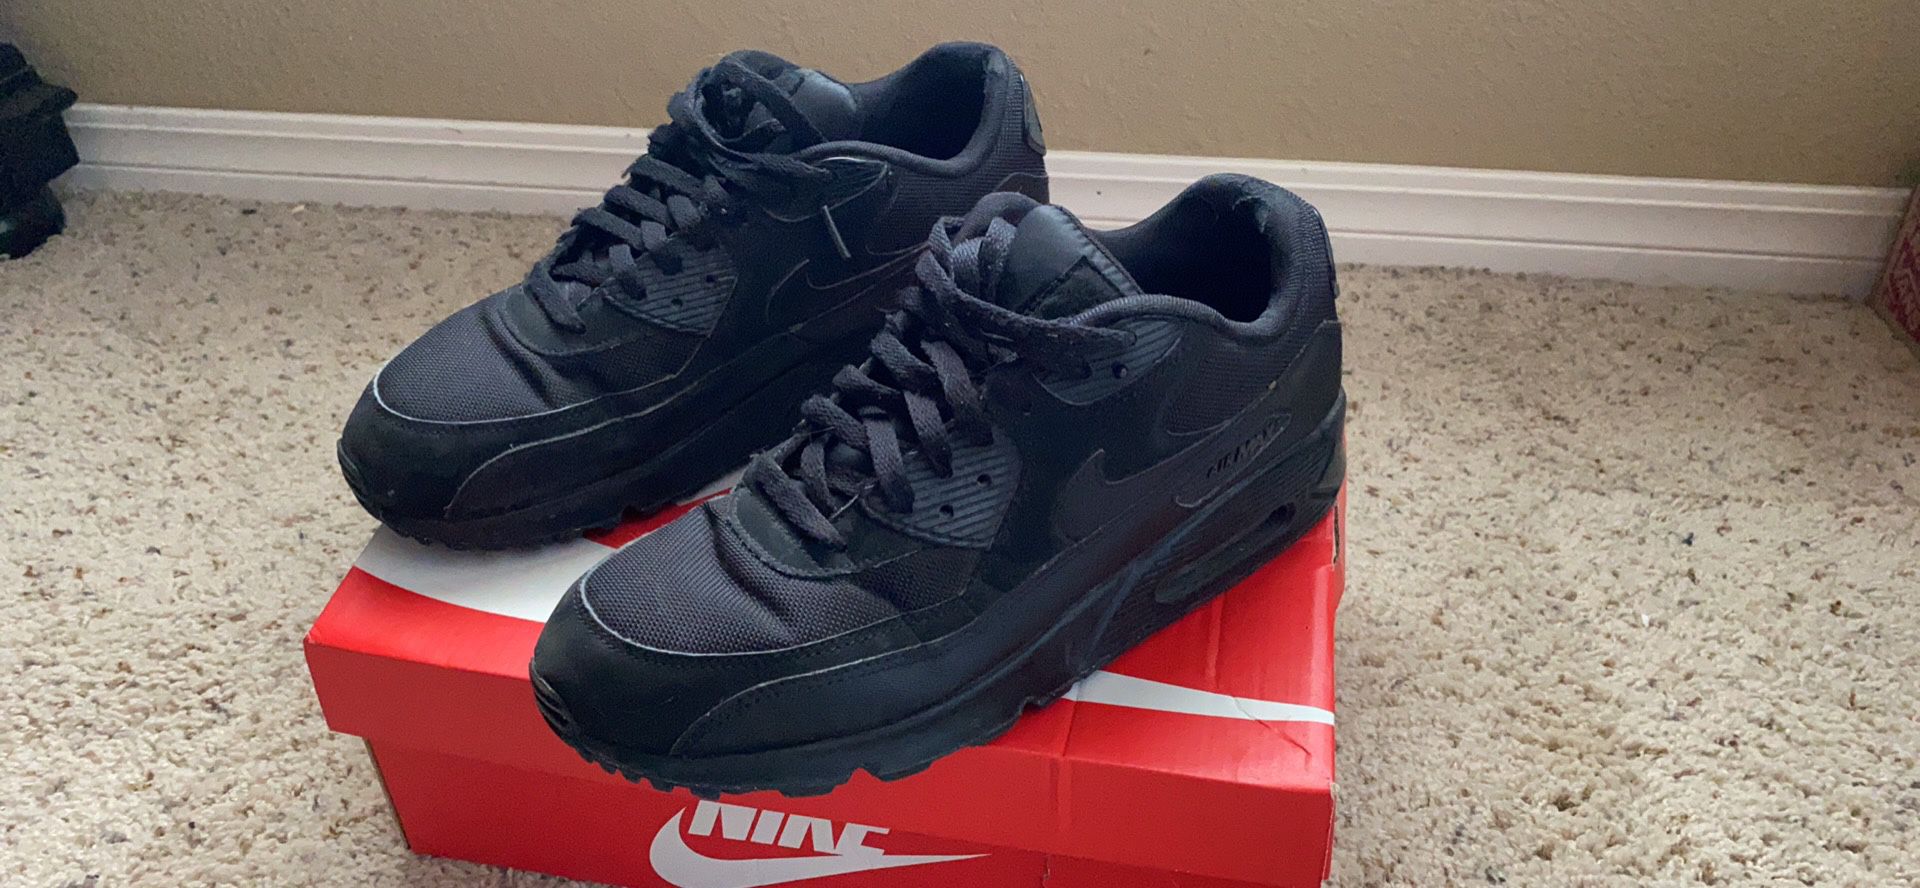 Jordans/Nike